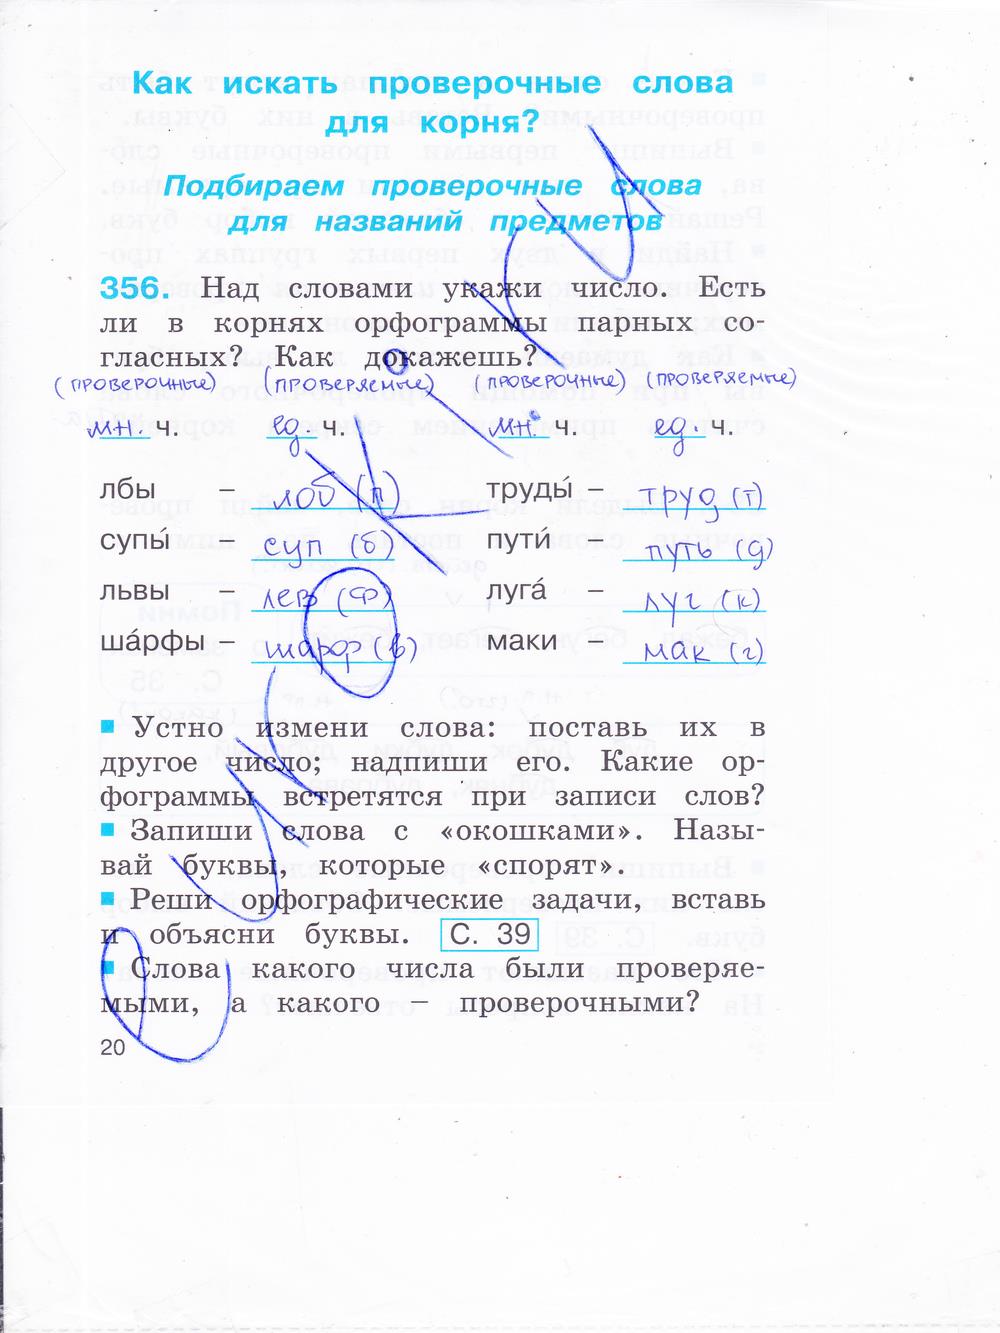 гдз 2 класс рабочая тетрадь часть 2 страница 20 русский язык Соловейчик, Кузьменко